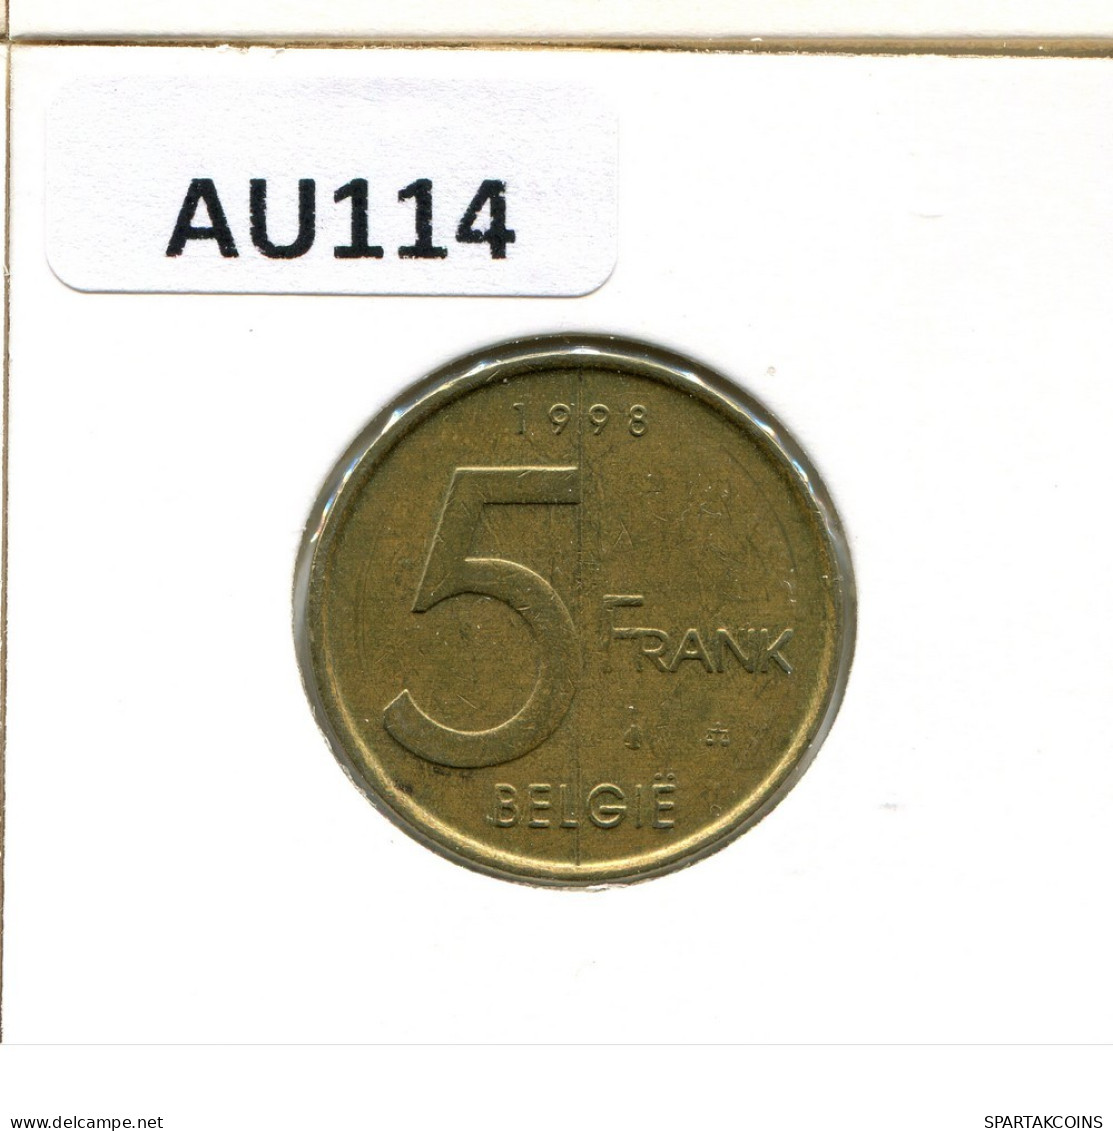 5 FRANCS 1998 DUTCH Text BELGIUM Coin #AU114.U.A - 5 Francs